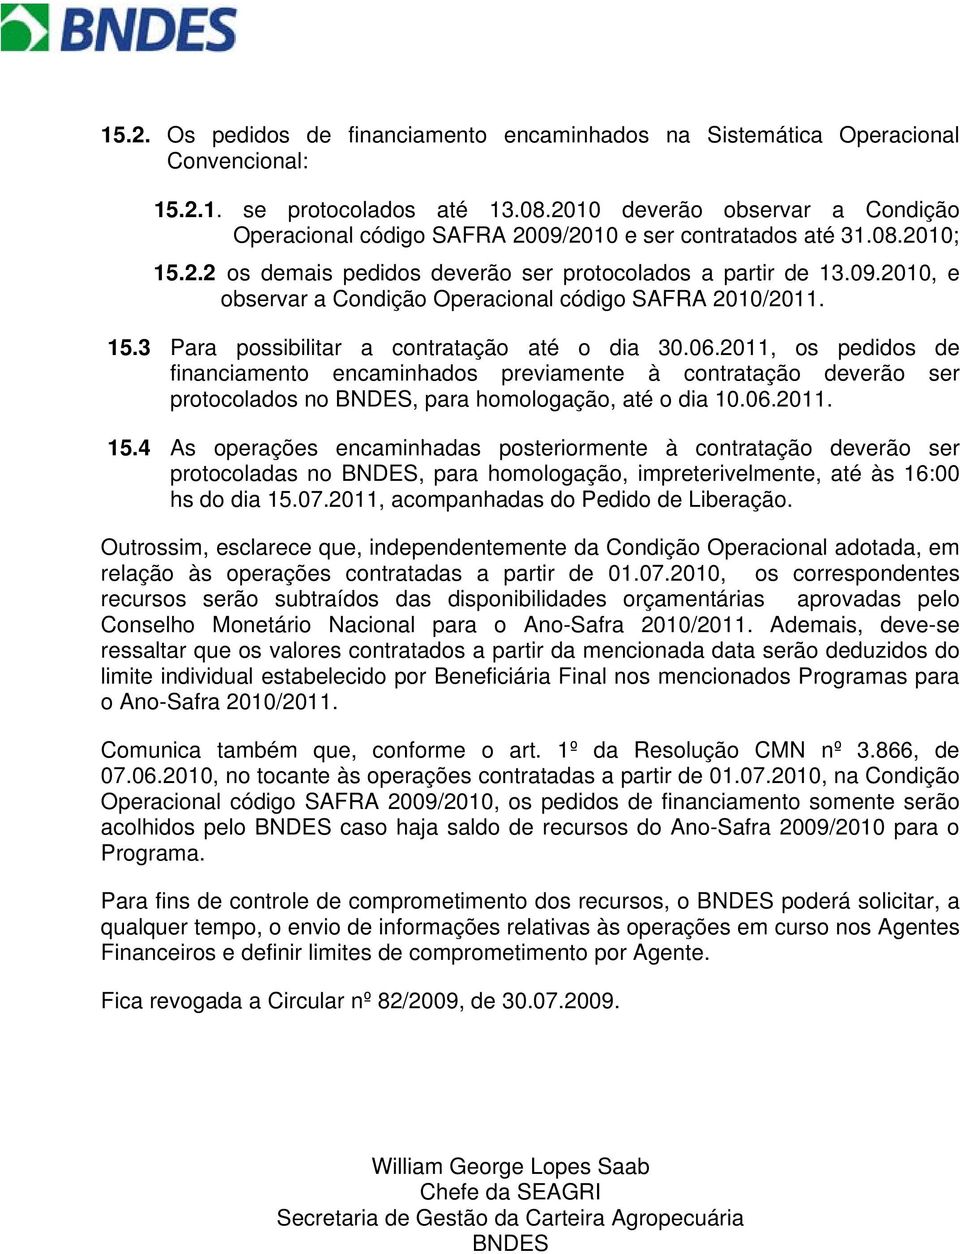 15.3 Para possibilitar a contratação até o dia 30.06.2011, os pedidos de financiamento encaminhados previamente à contratação deverão ser protocolados no BNDES, para homologação, até o dia 10.06.2011. 15.